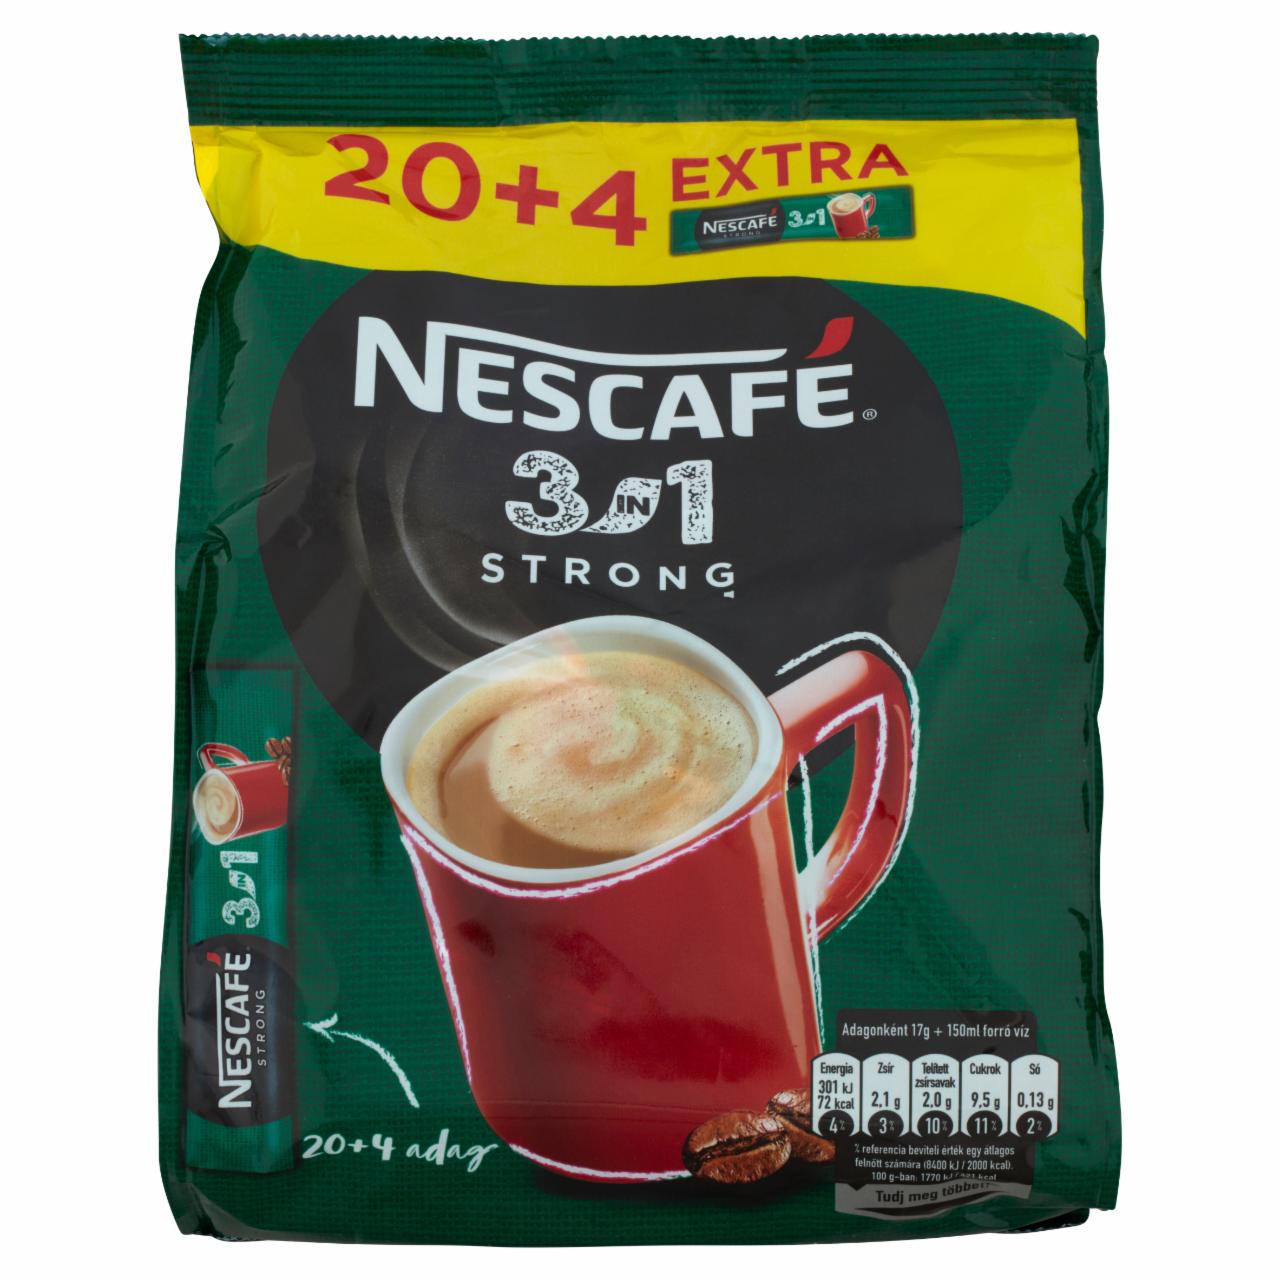 Képek - Nescafé 3in1 Strong azonnal oldódó kávéspecialitás 24 x 17 g (408 g)